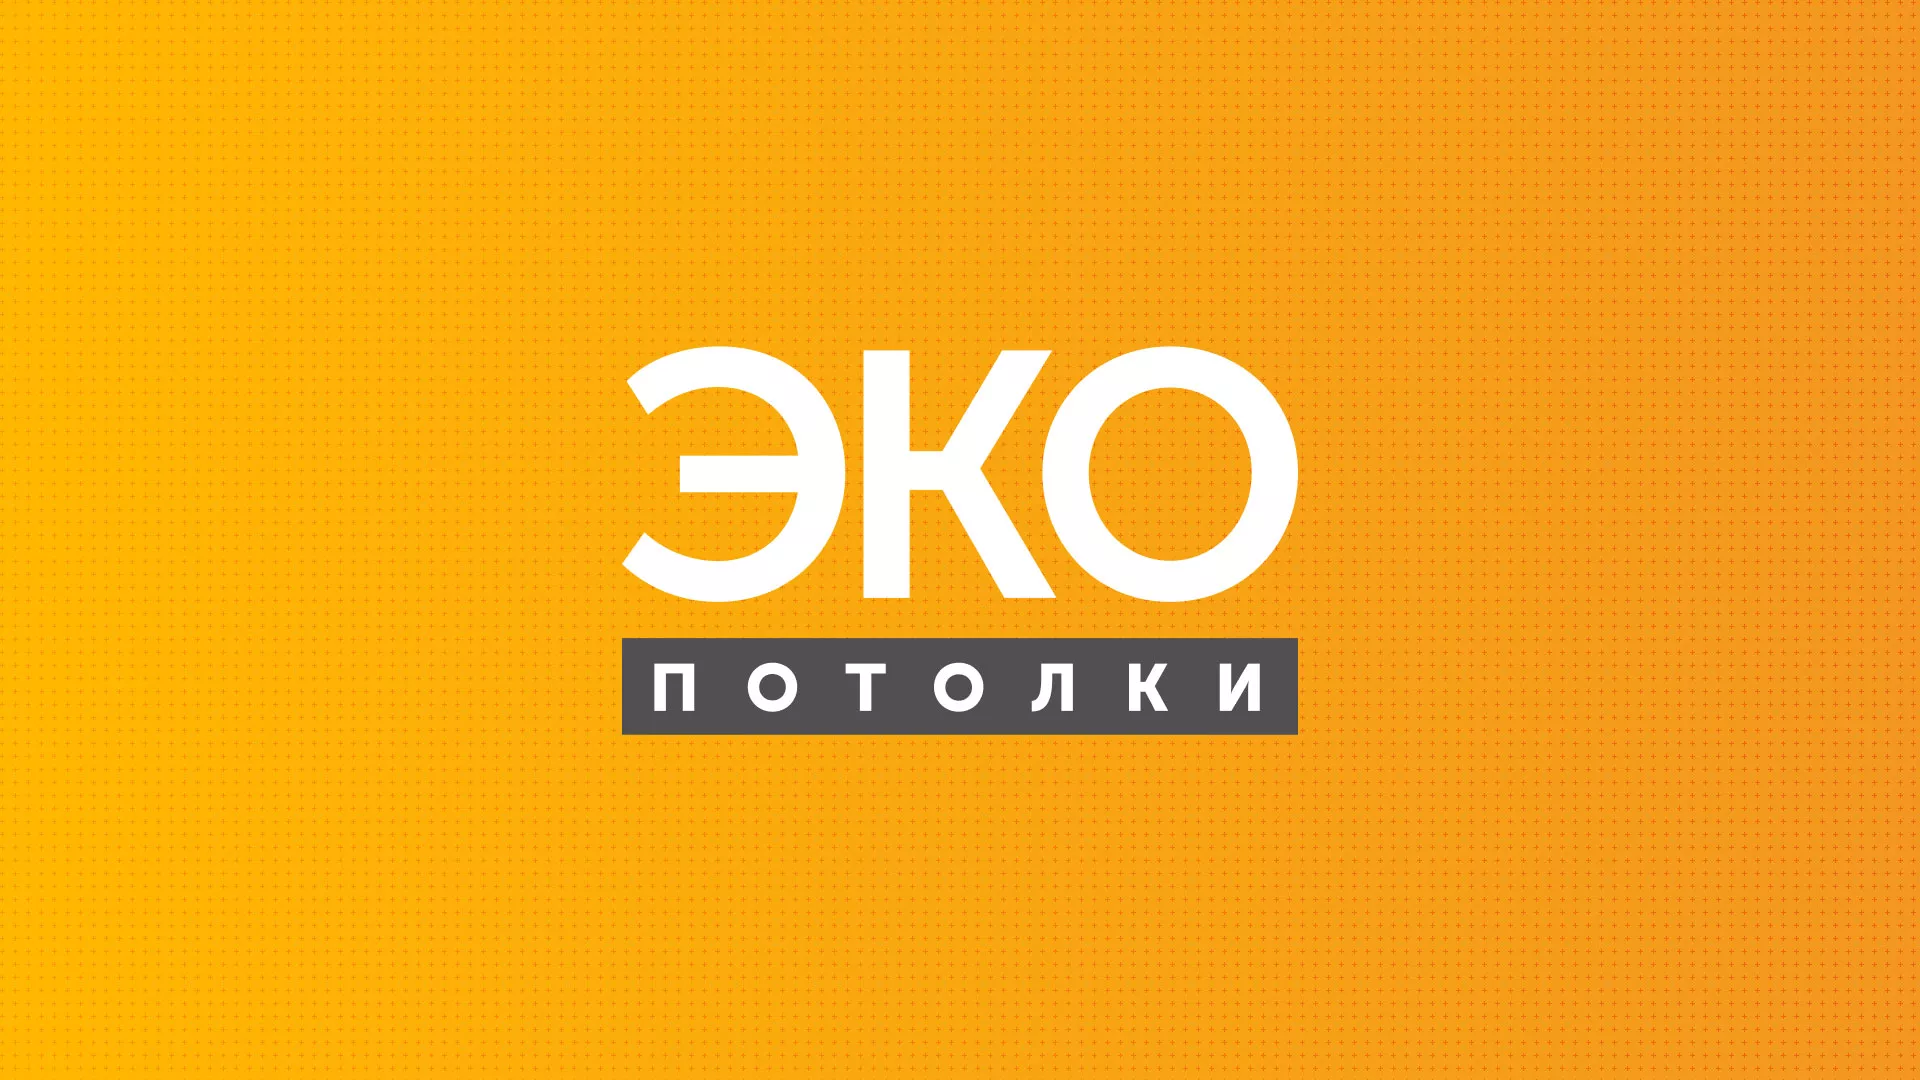 Разработка сайта по натяжным потолкам «Эко Потолки» в Подольске